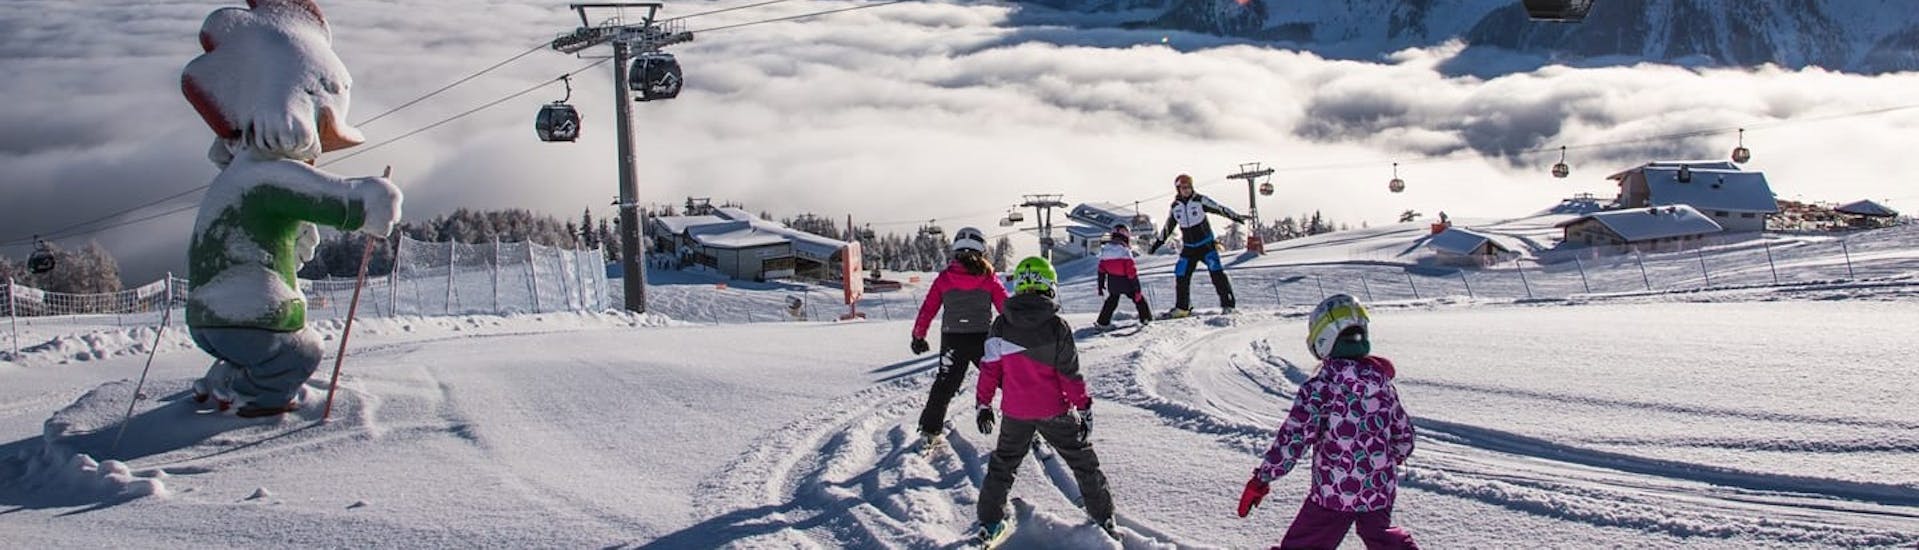 ncredibile vista sulle piste di Valdaora durante una delle lezioni di sci per bambini a tutti i livelli nel pomeriggio. 